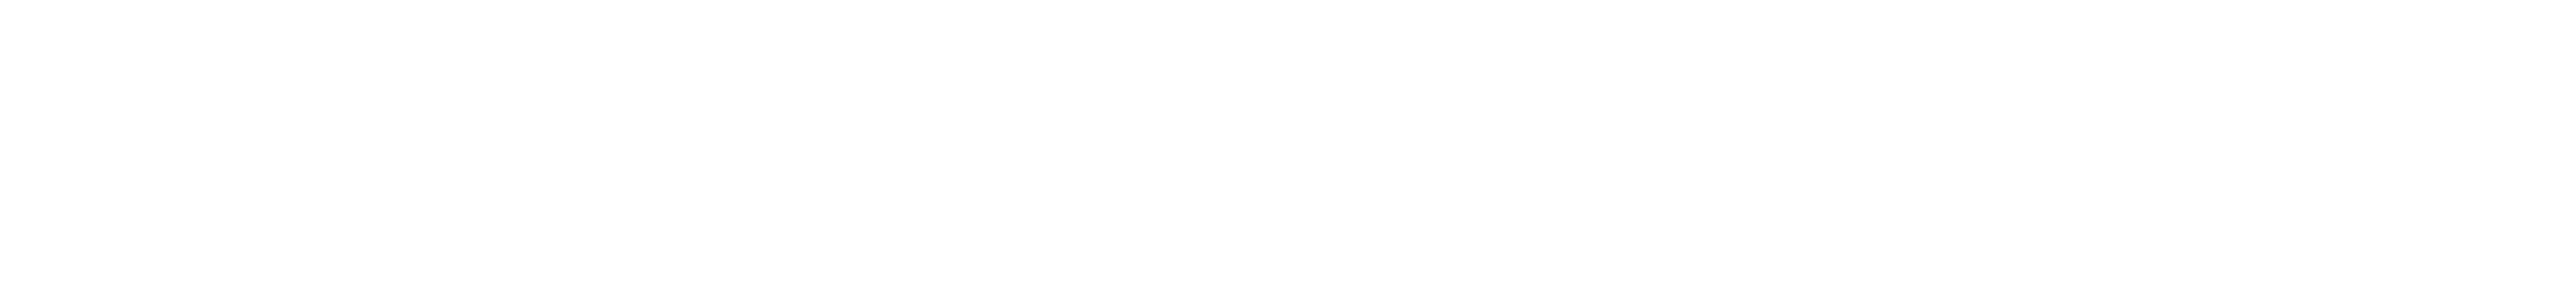 Precast Services Logo